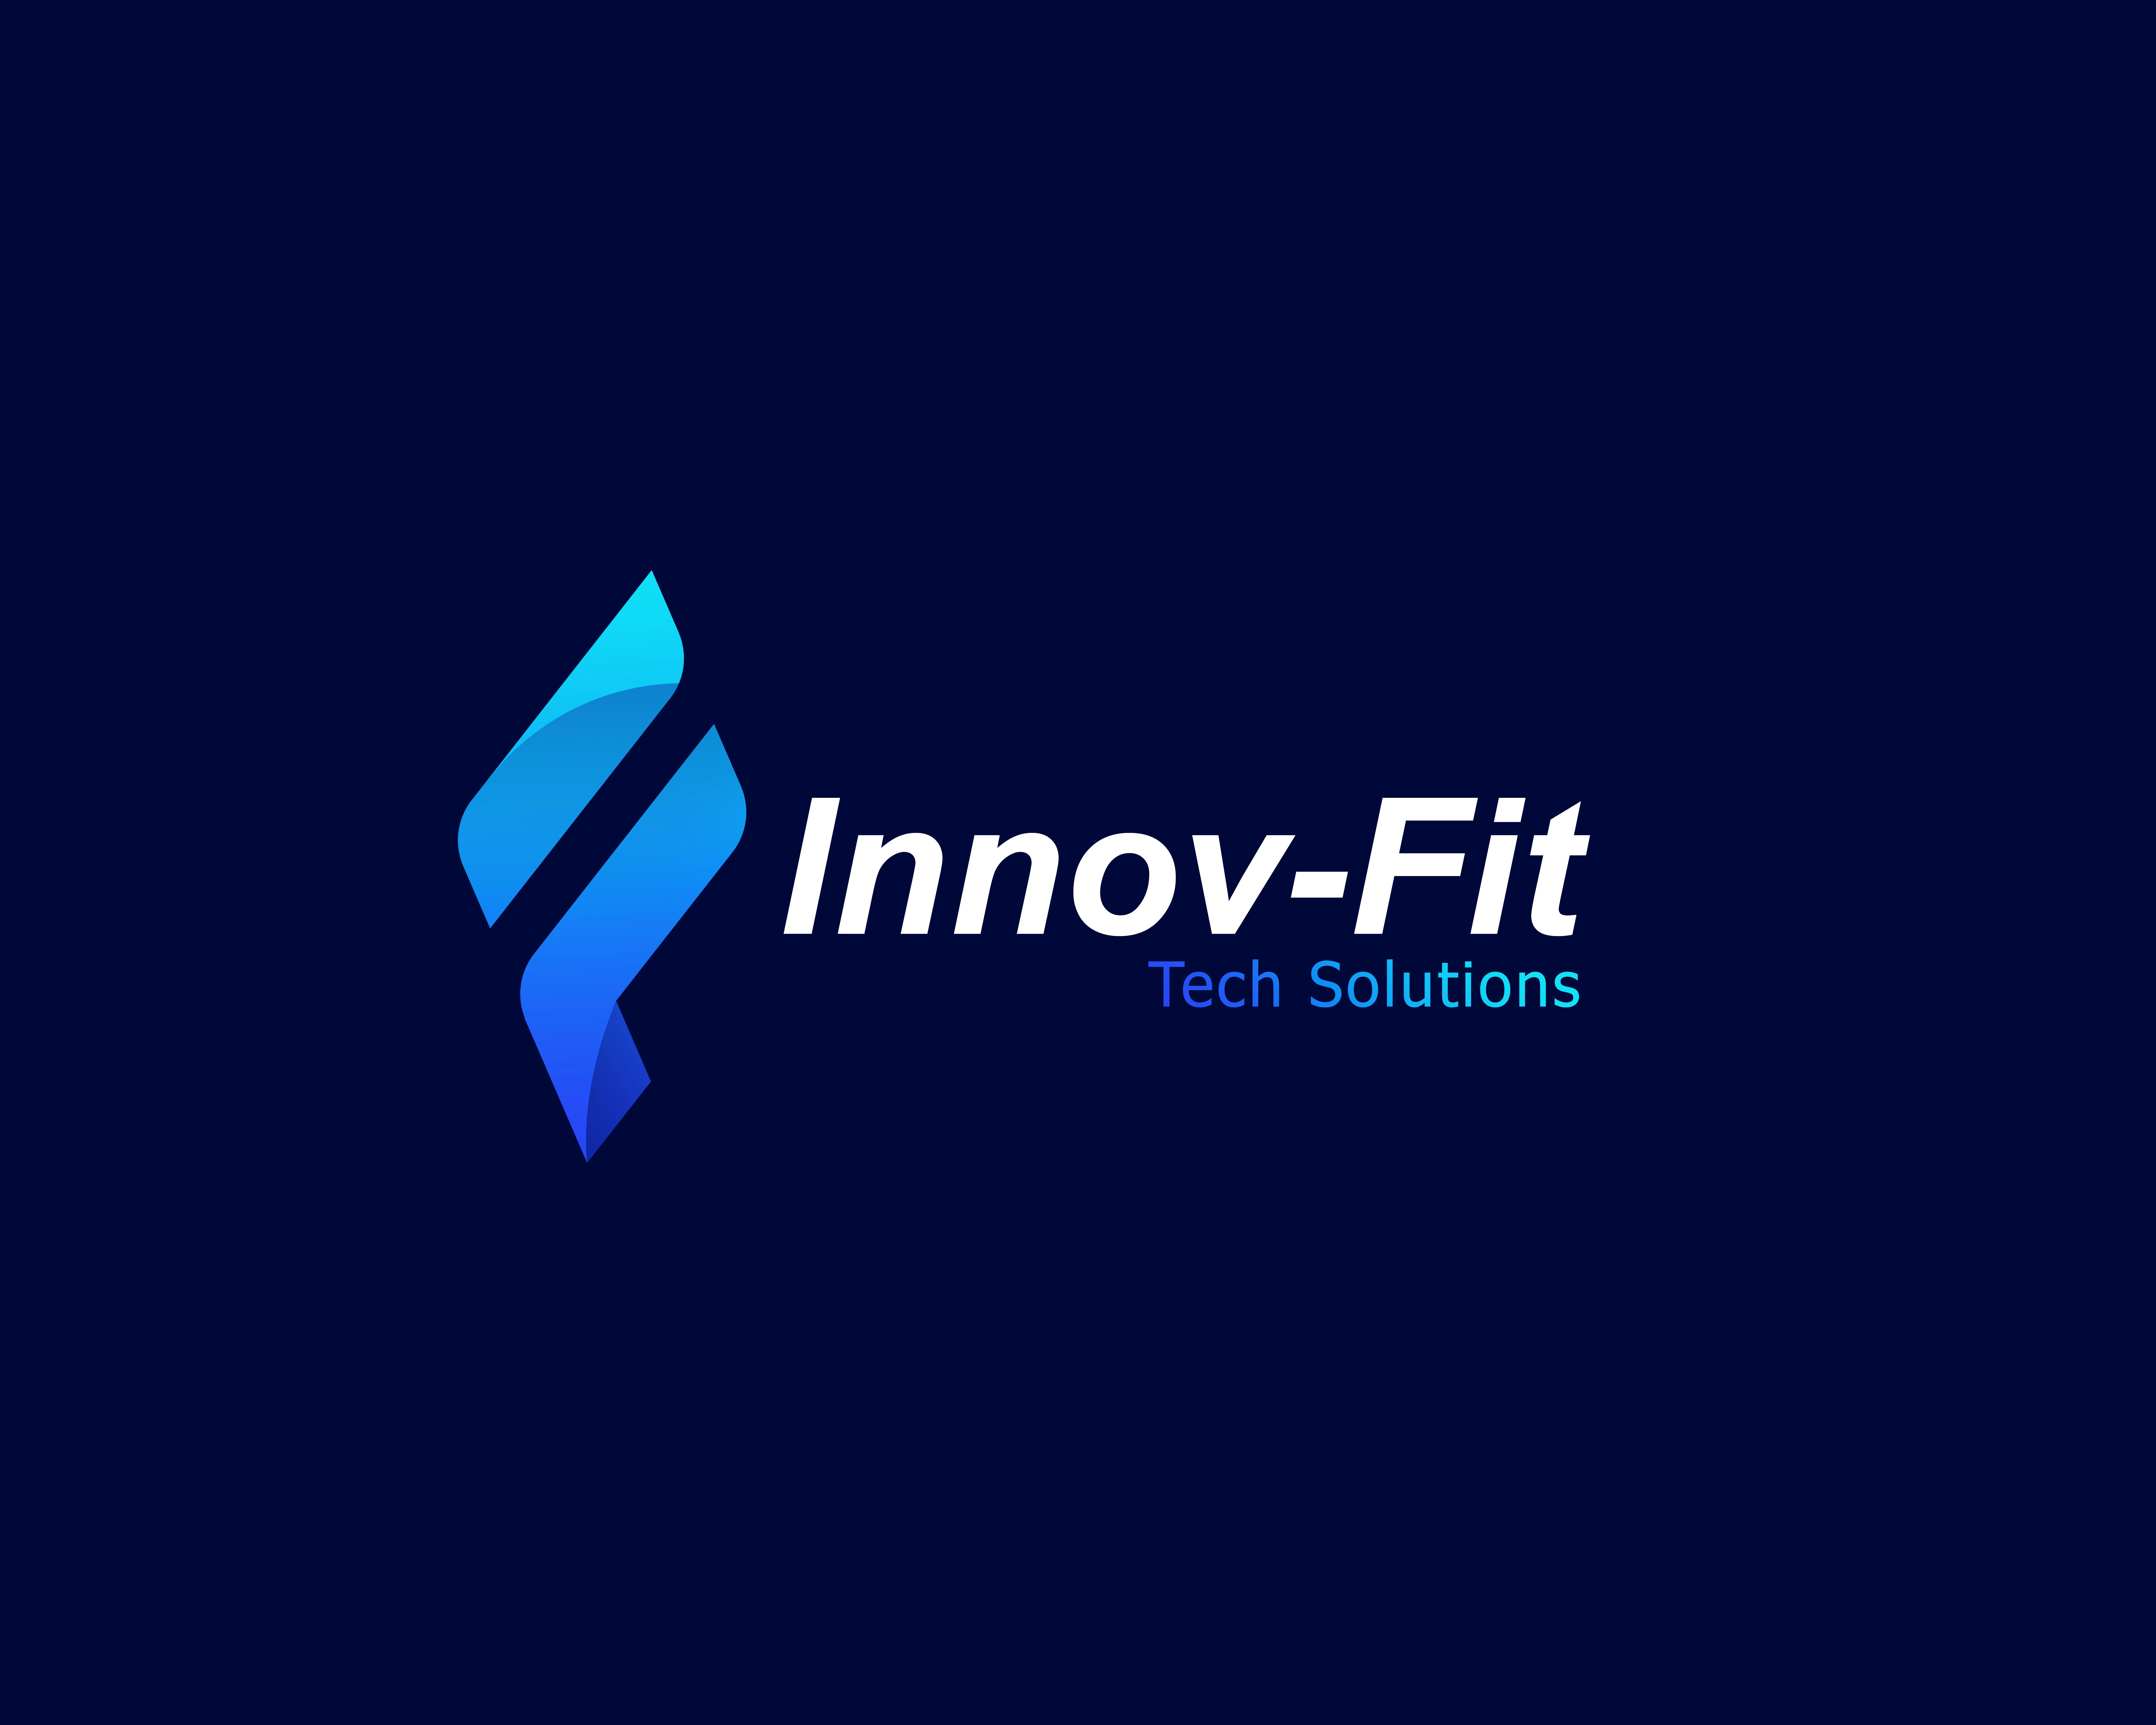 Okfit partner Innovfit Tech solutions logo